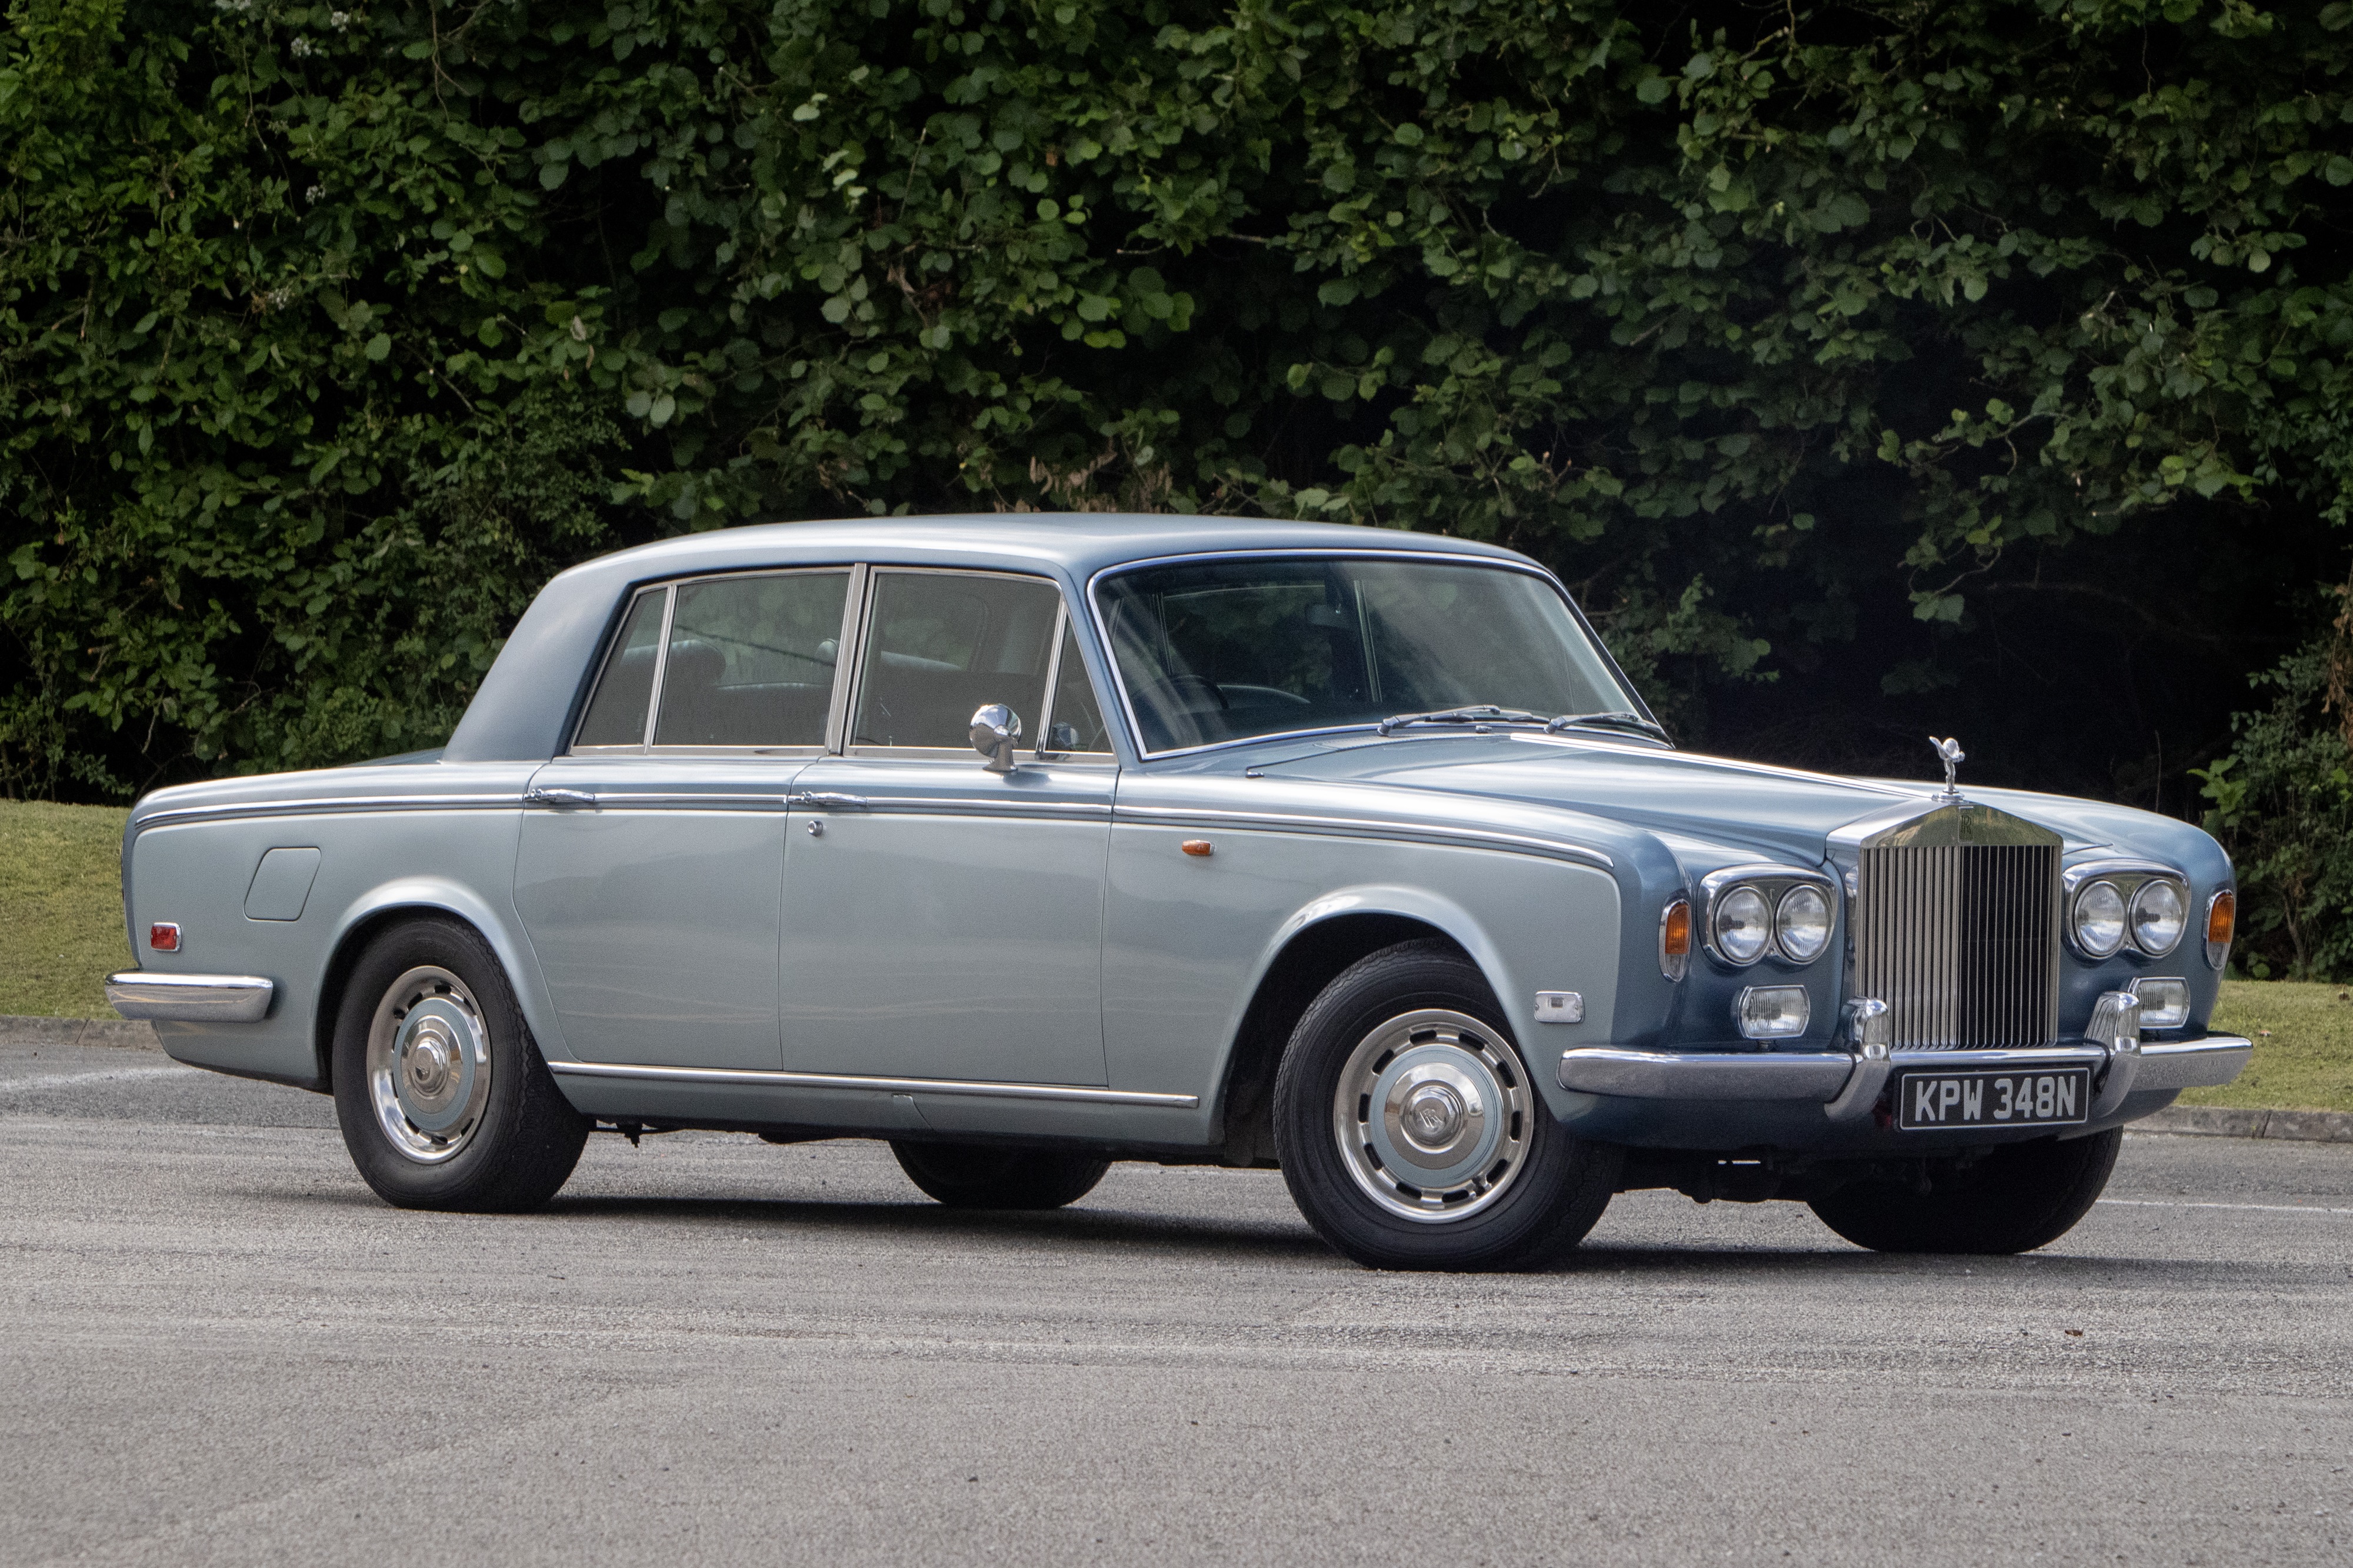 Classic 1977 Rolls-Royce Silver Shadow II - Fully Documented